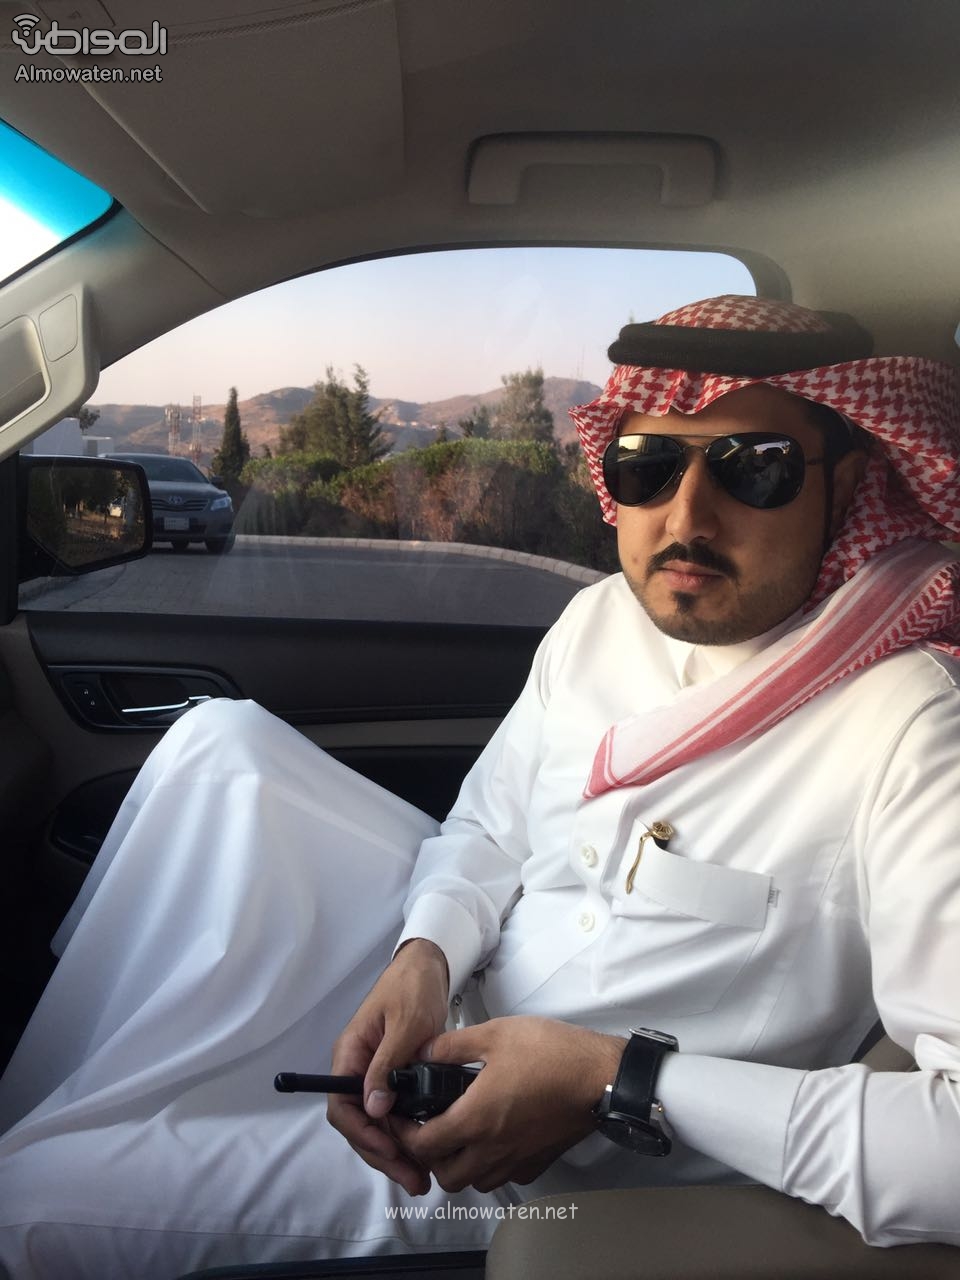 بالصور.. قصة النقيب الشهري مرافق الأمير منصور بن مقرن